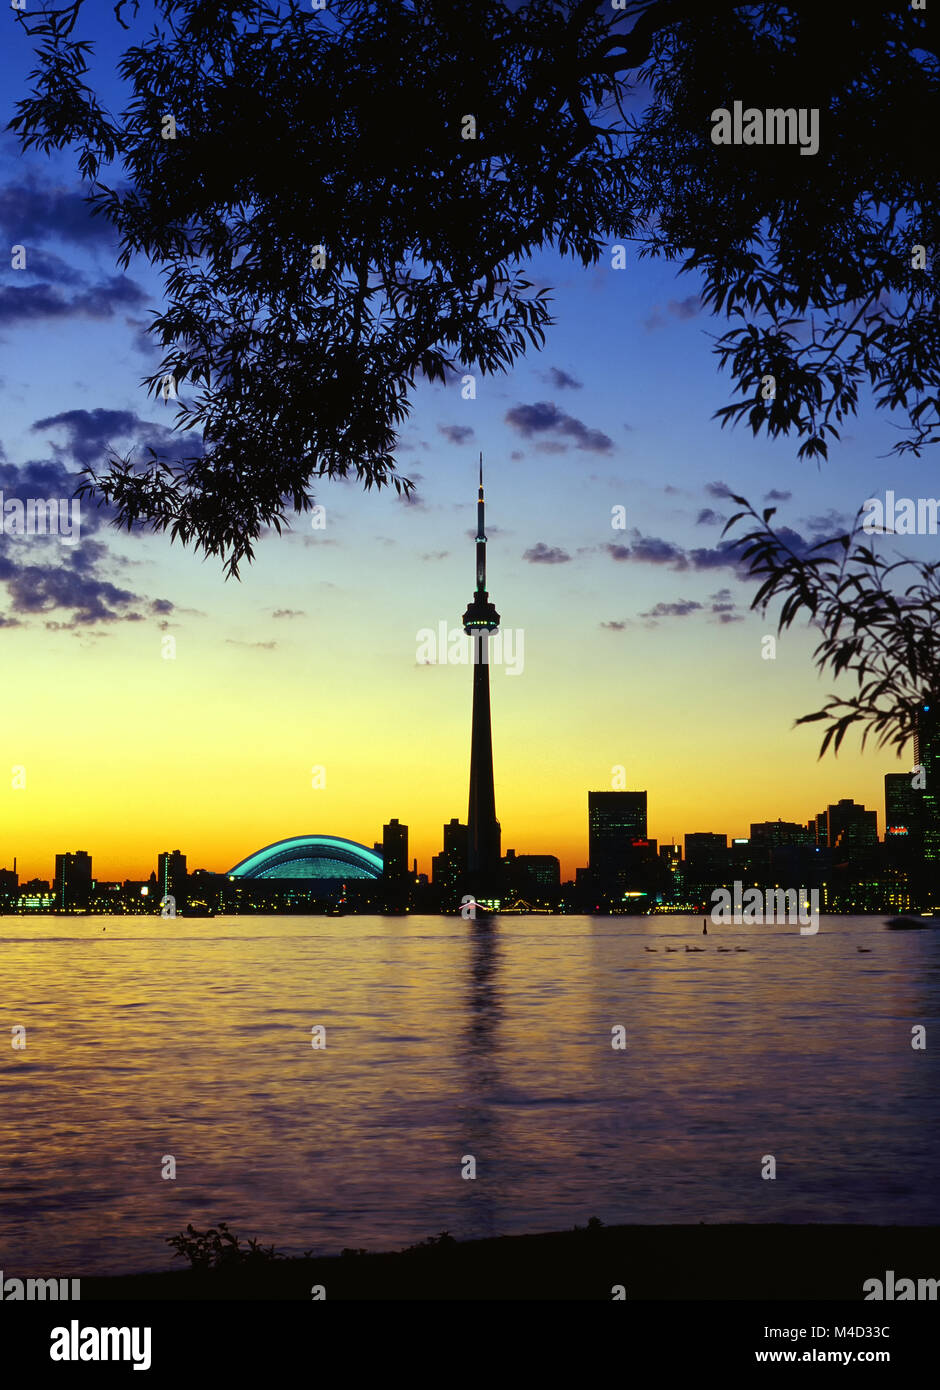 1995 Toronto Ontario Canada, Vue de l'île de Toronto au coucher du soleil Banque D'Images